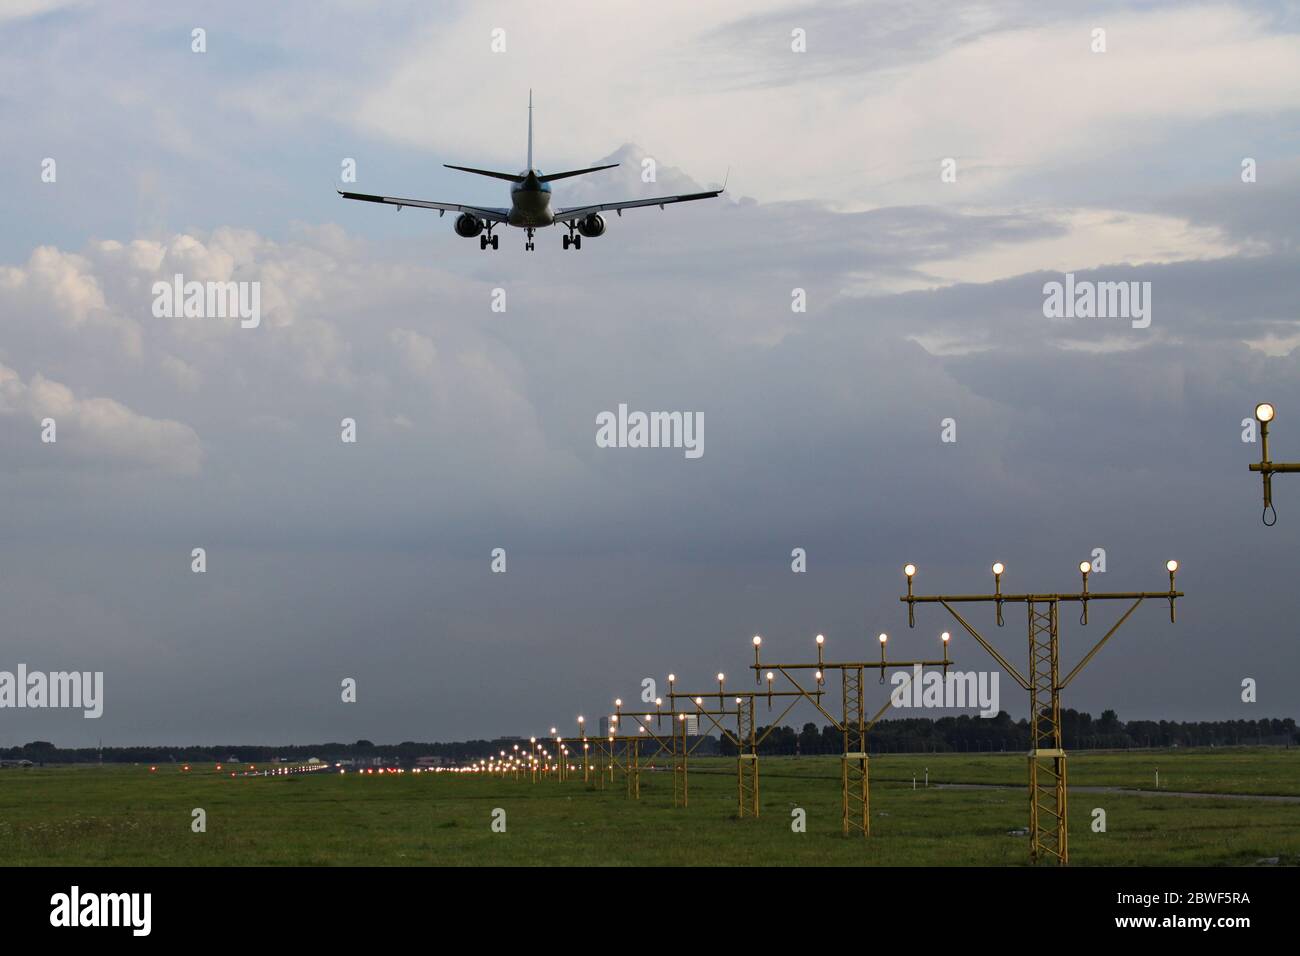 aircraft on shot final following landing strip lights Stock Photo